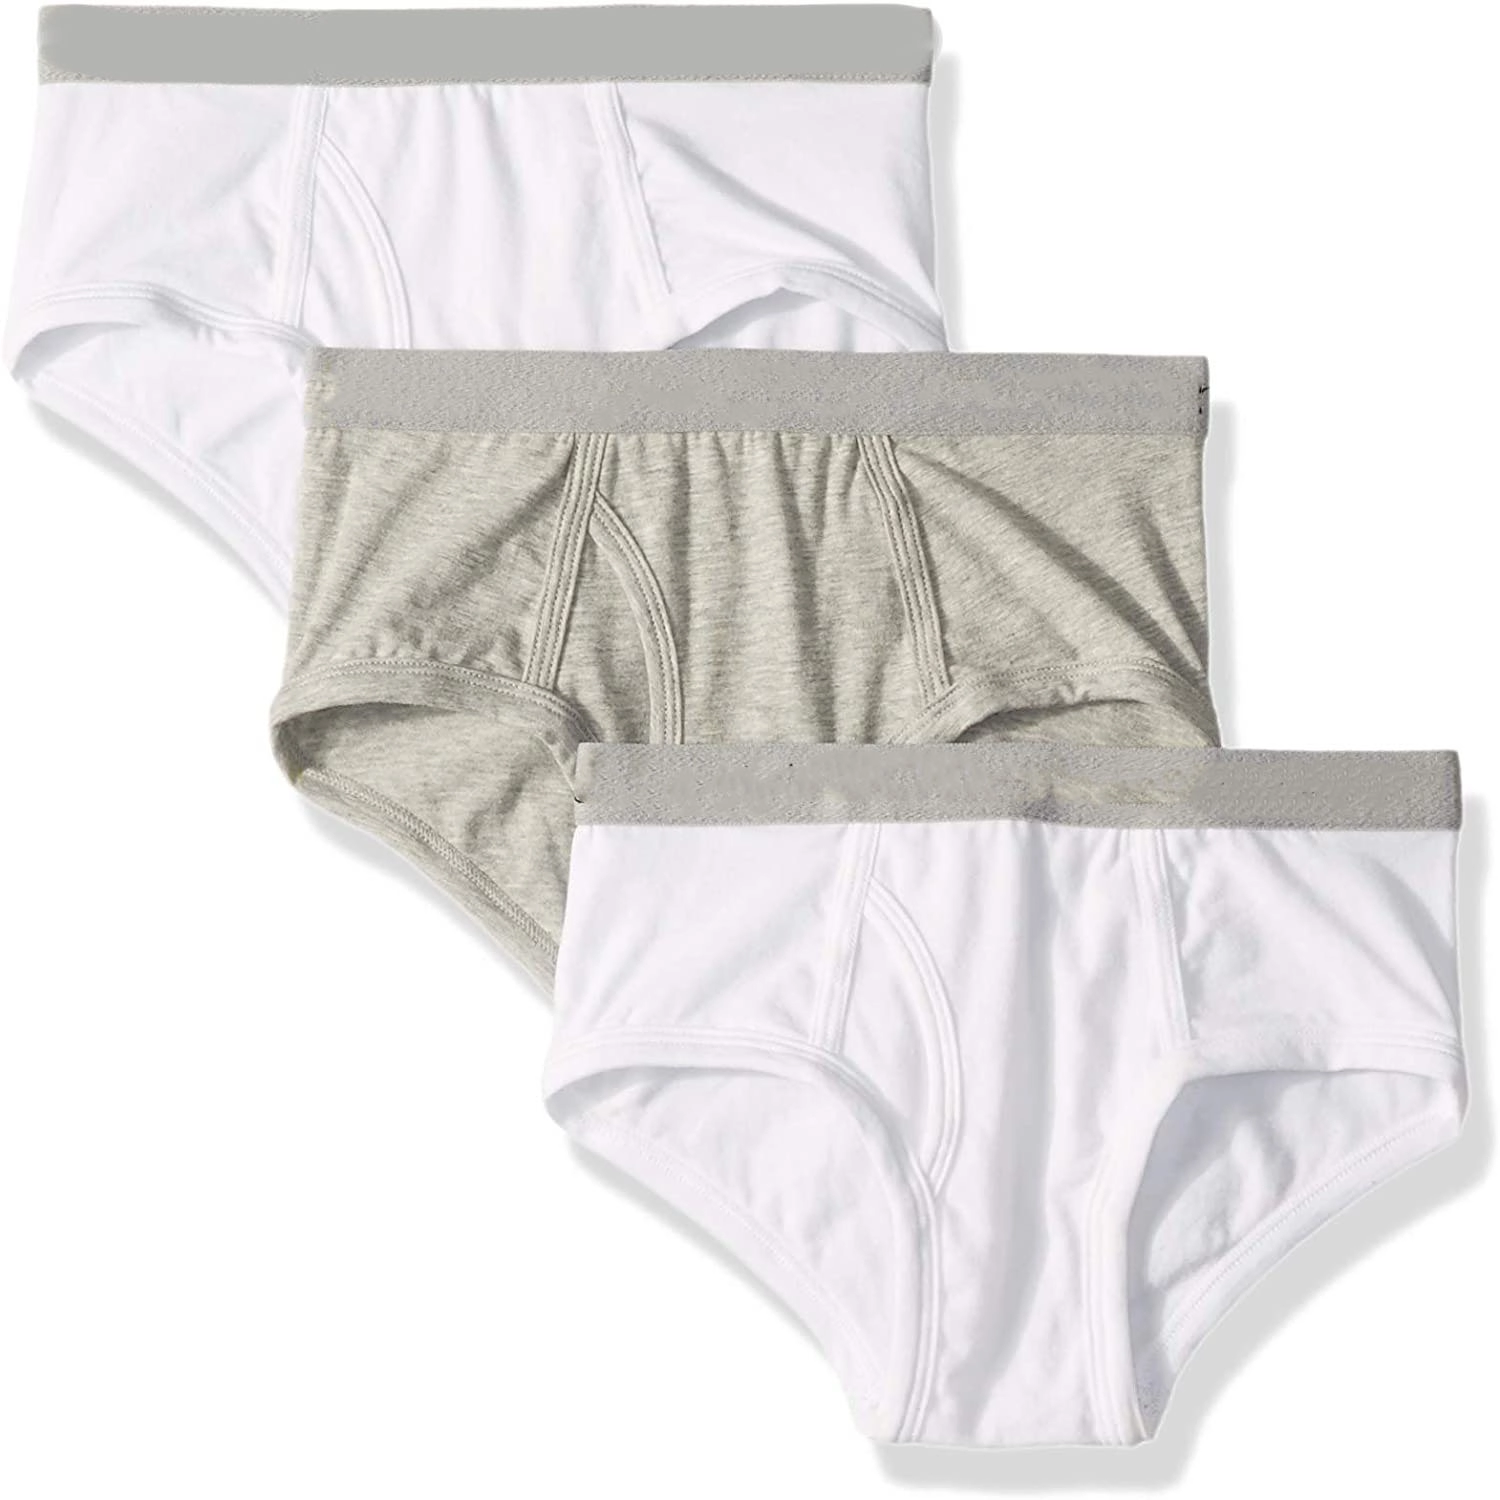 Boys&#8217; Kids Modern Cotton Assorted Briefs Underwear